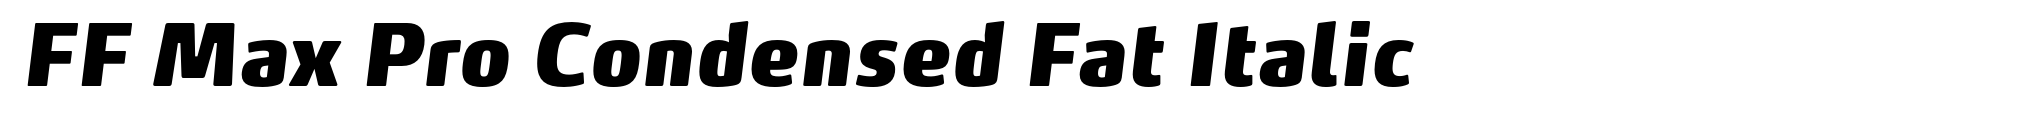 FF Max Pro Condensed Fat Italic image